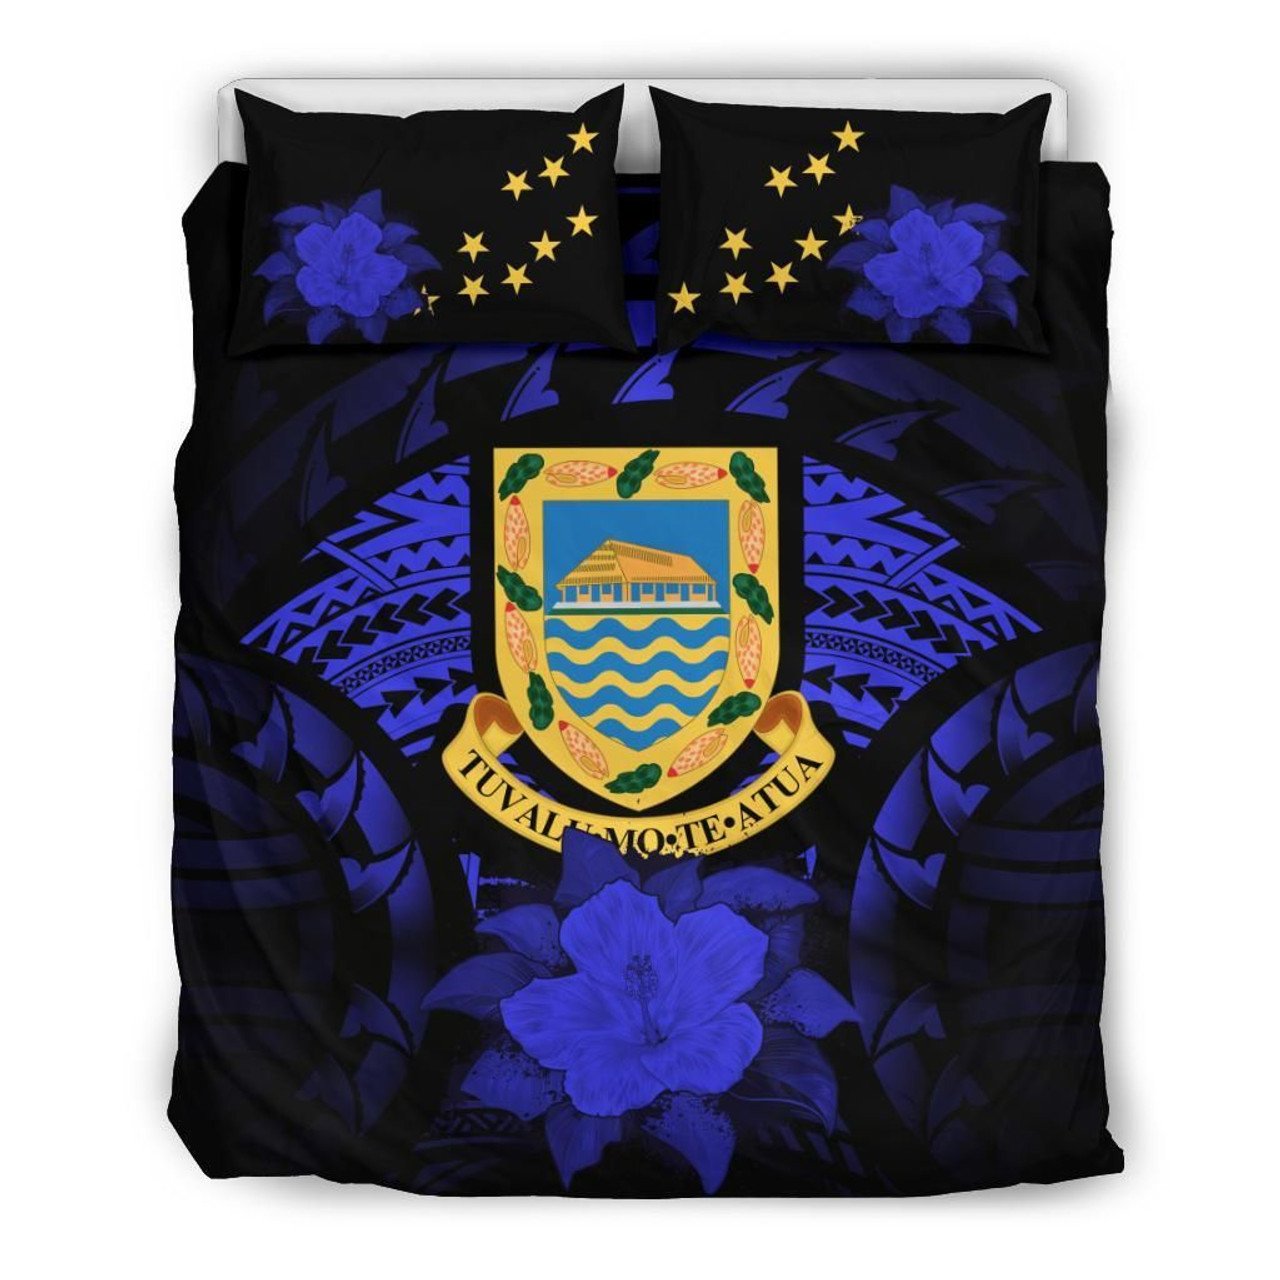 Tuvalu Duvet Cover Set - Tuvalu Coat Of Arms & Blue Hibiscus 2